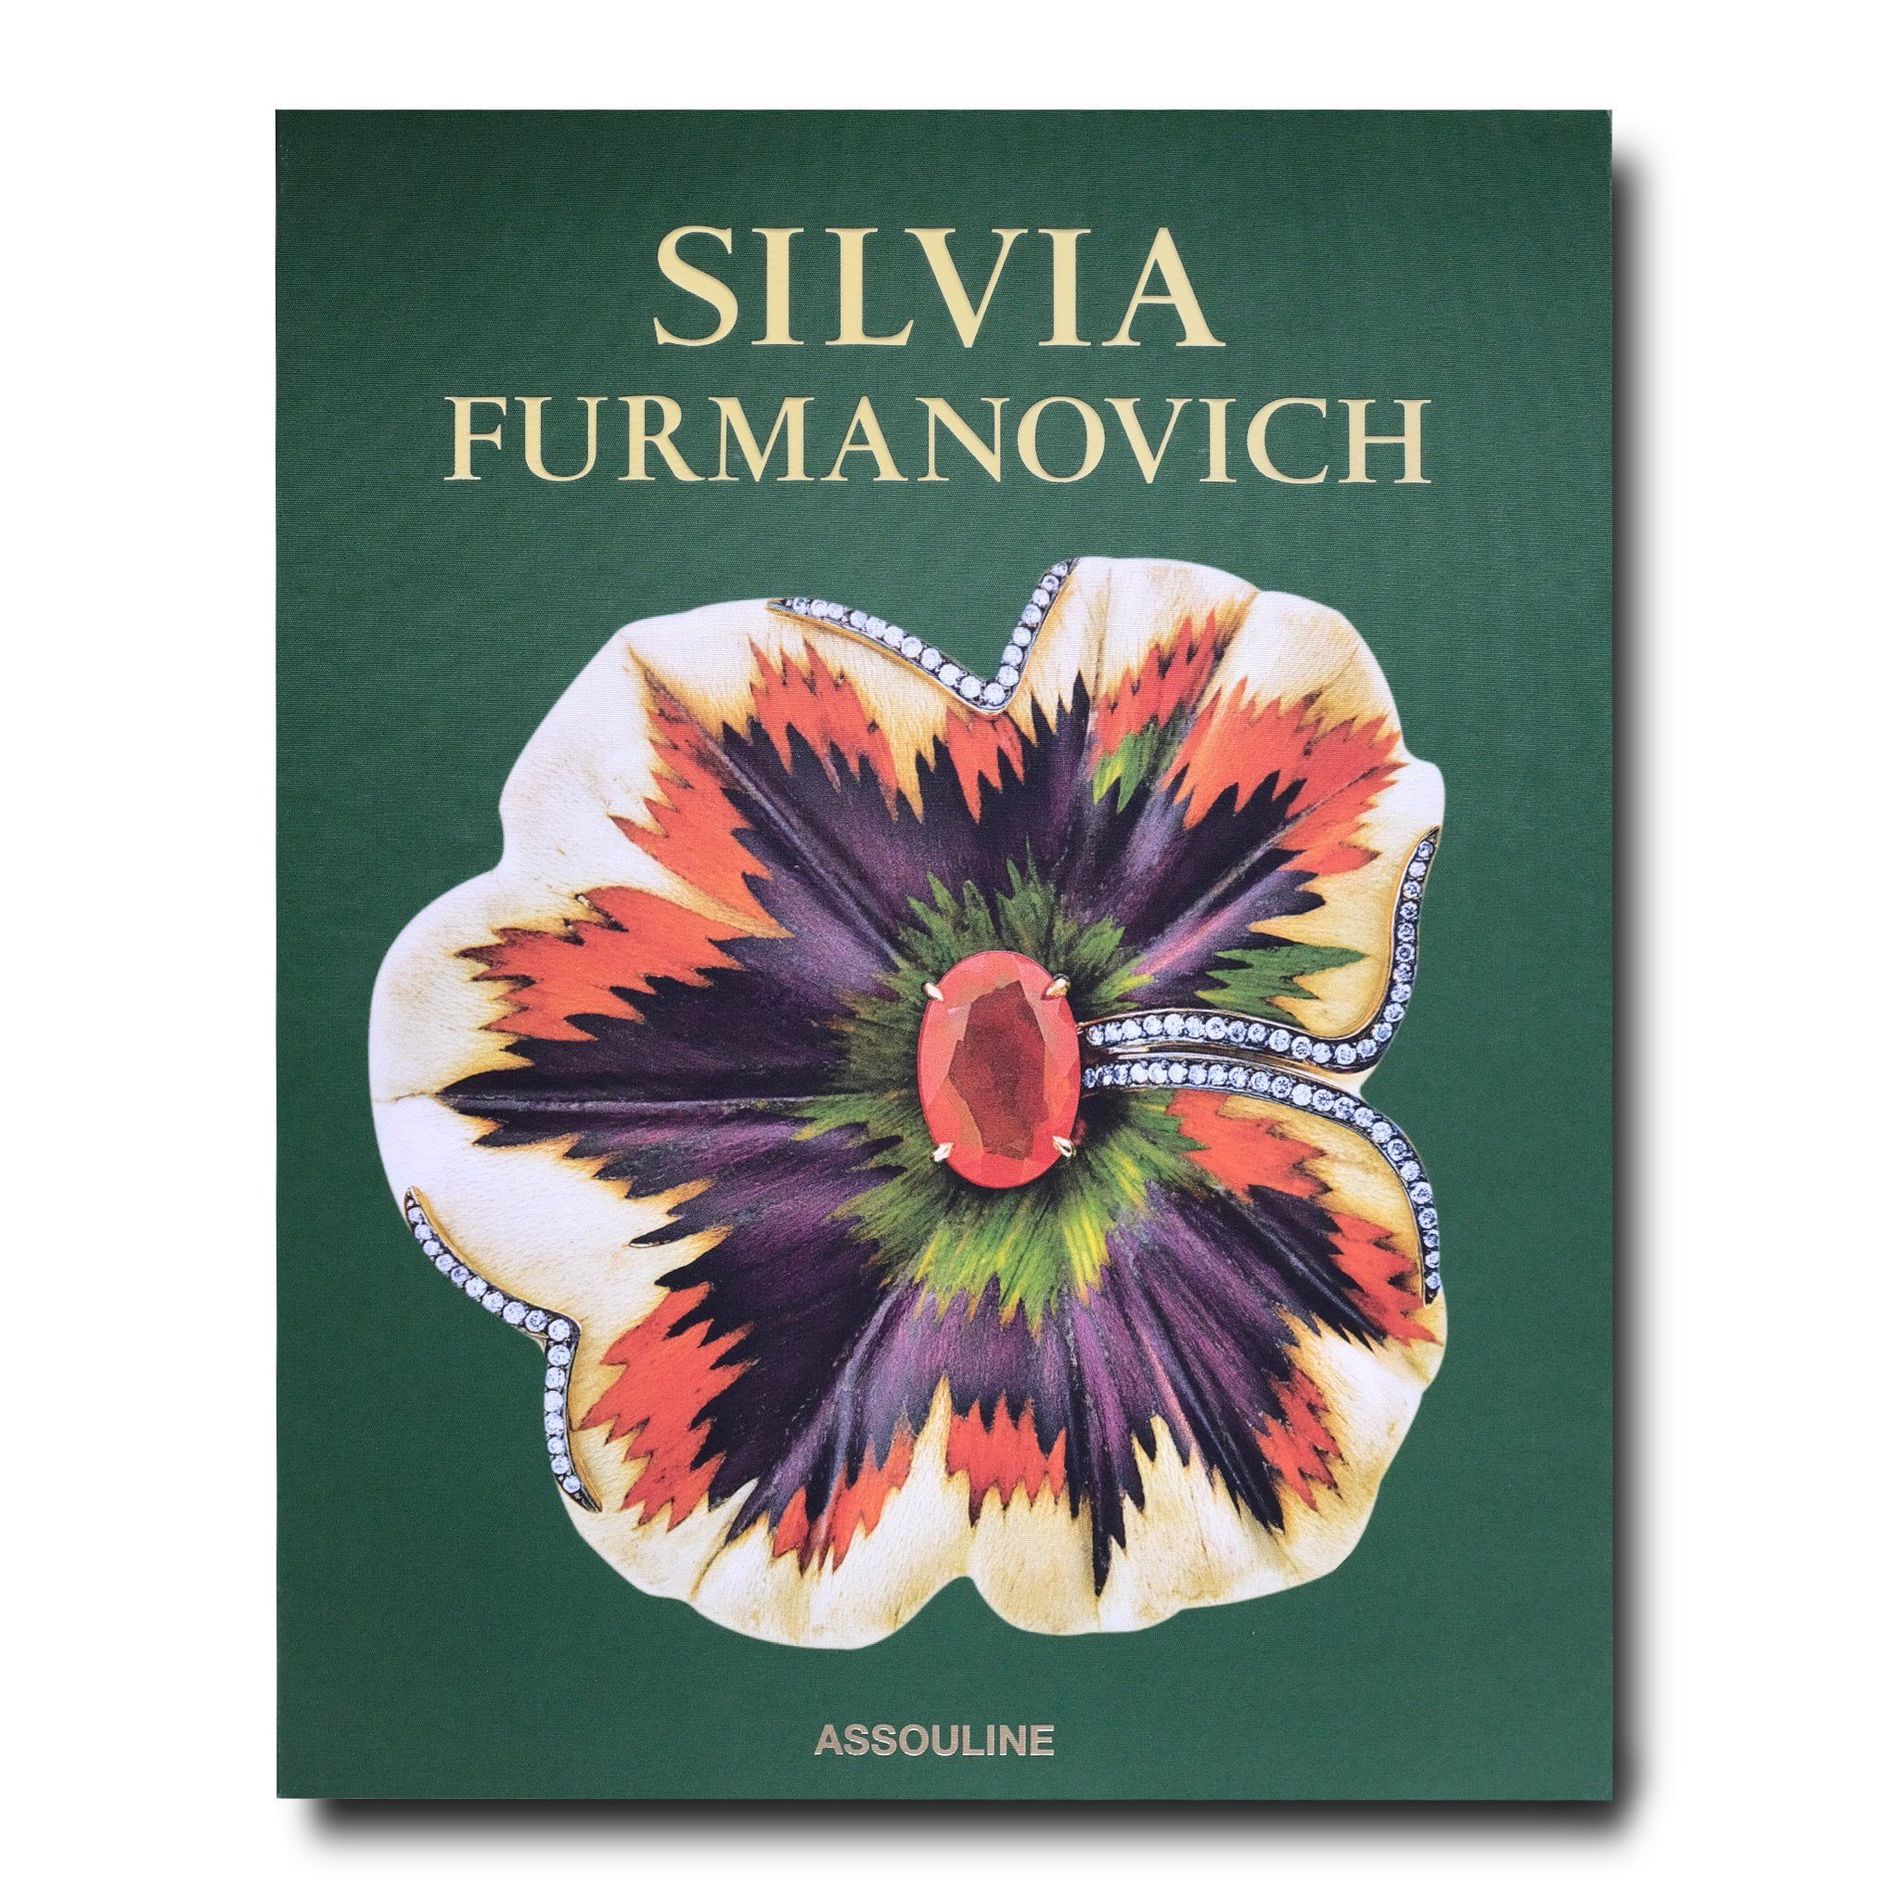 Silvia Furmanovich